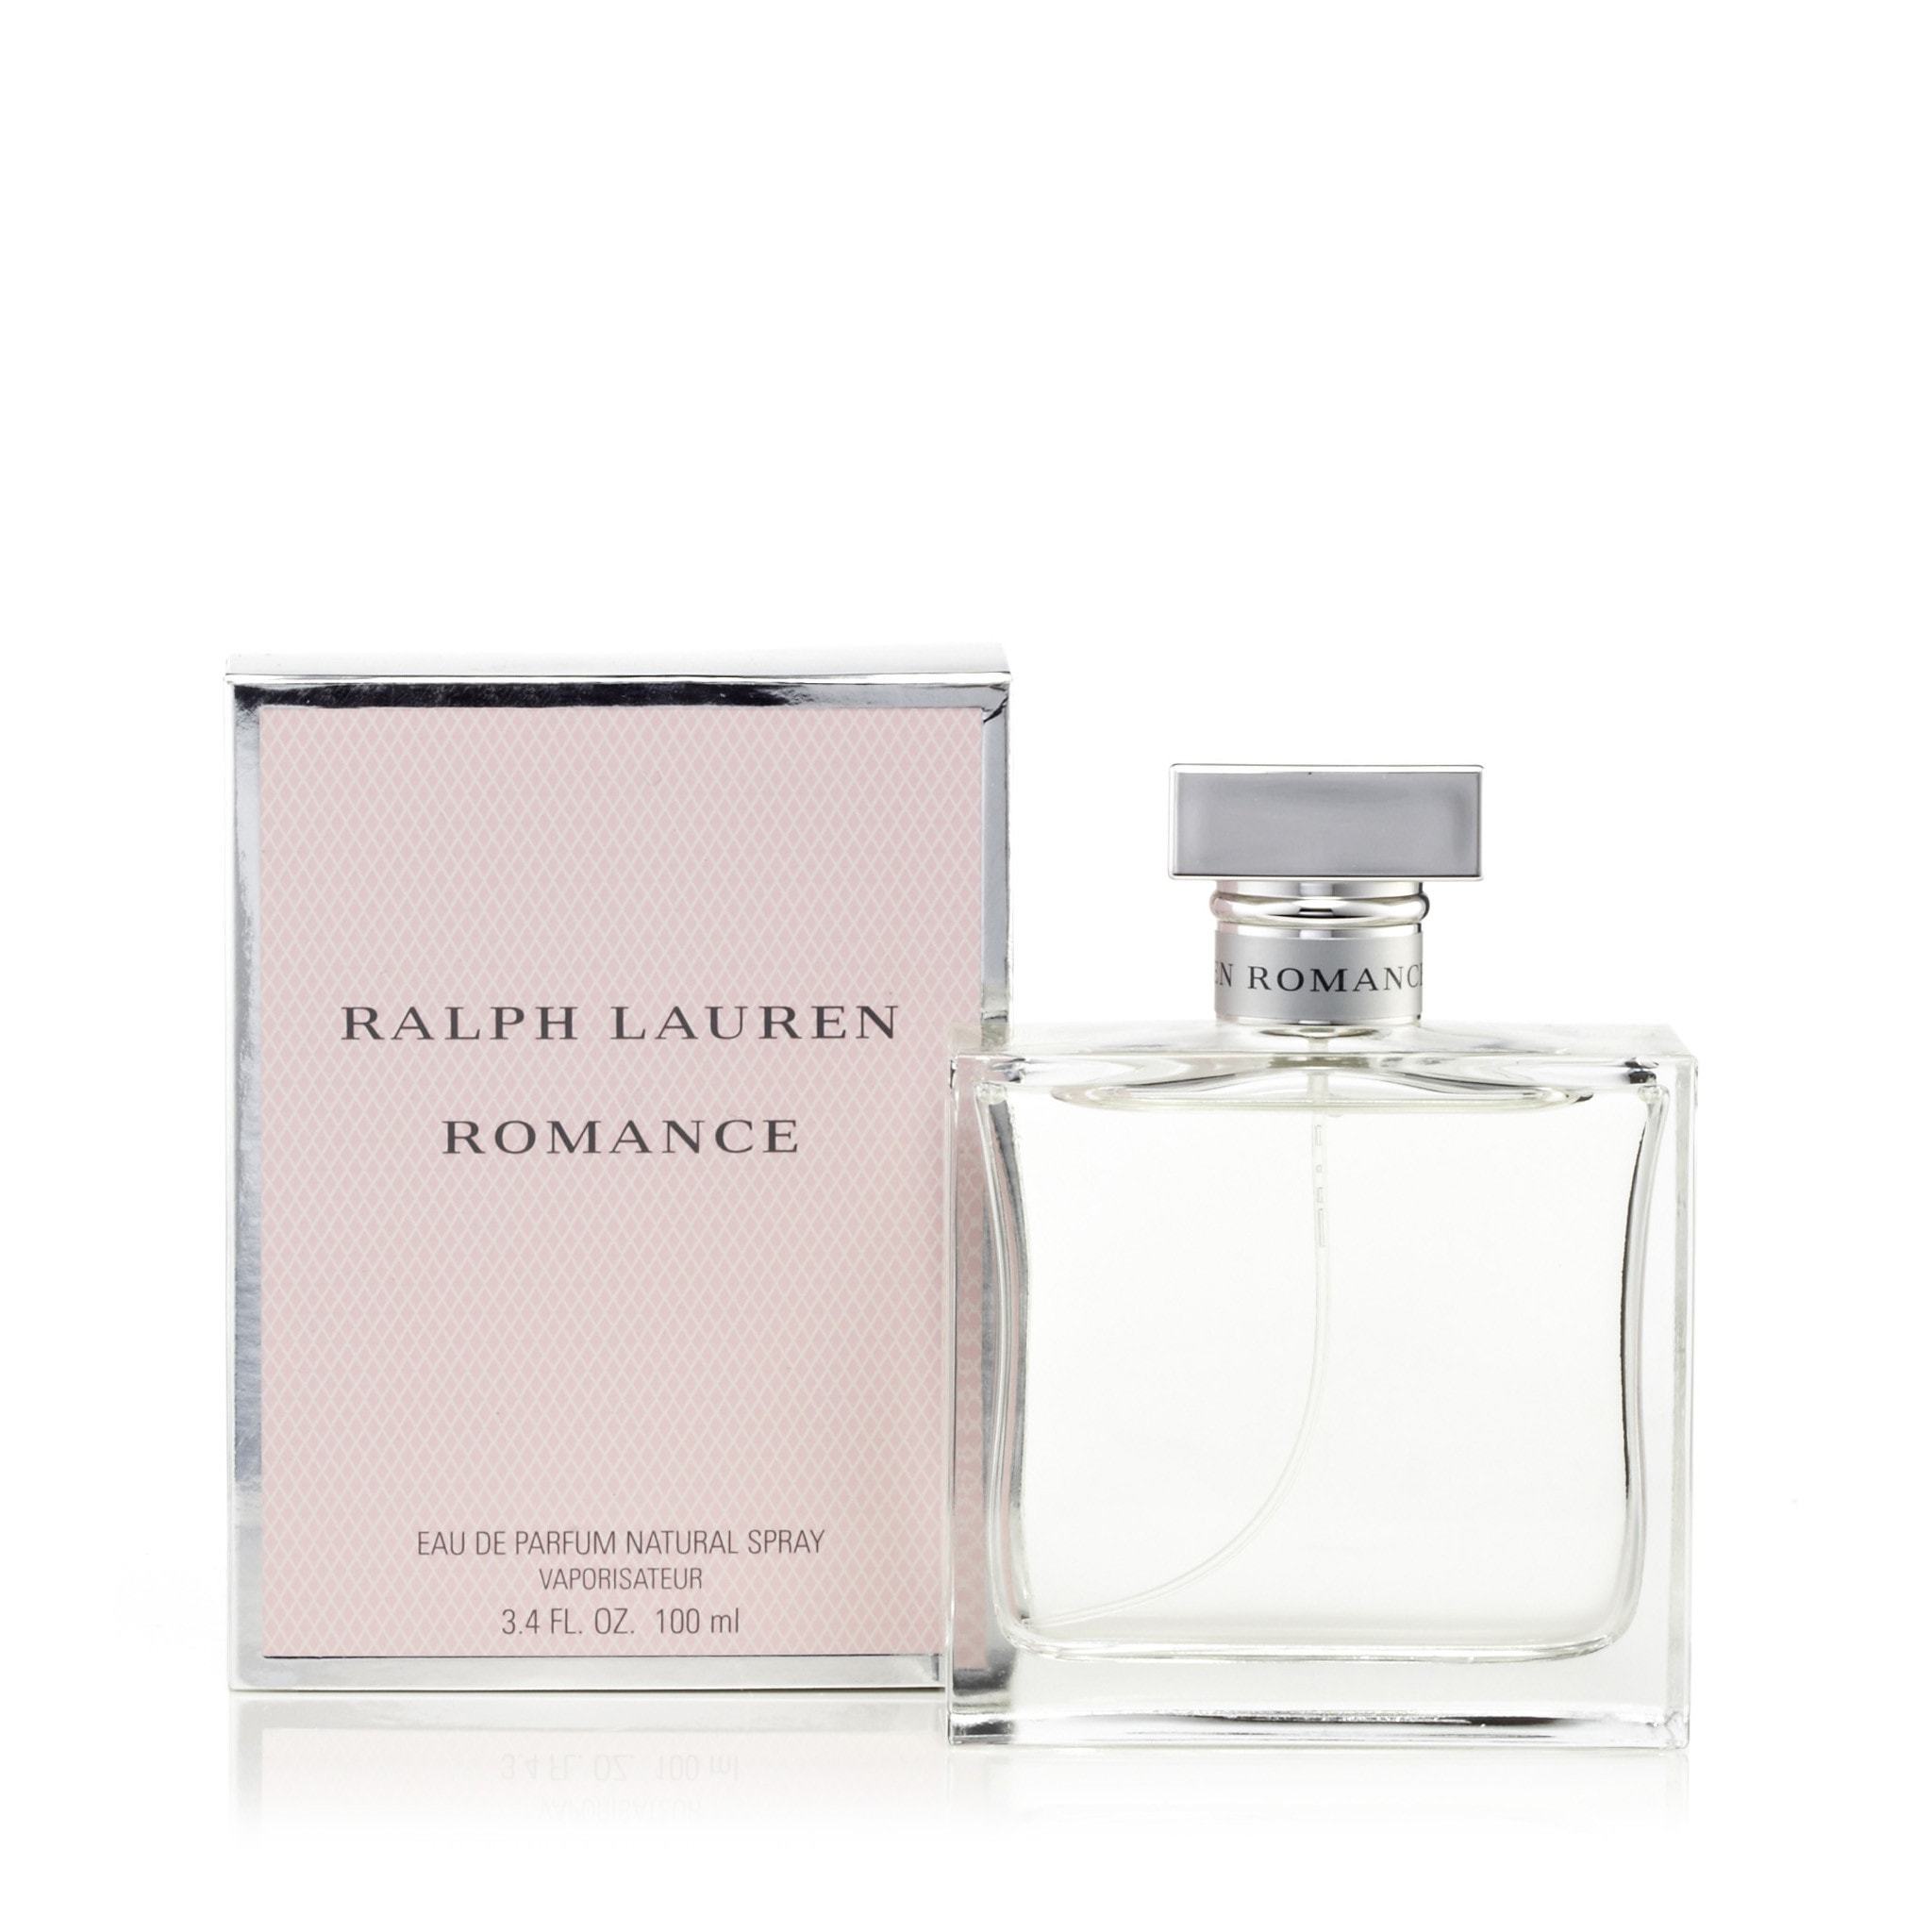 http://www.fragranceoutlet.com/cdn/shop/products/Ralph-Lauren-Romance-Womens-Eau-de-Parfume-Spray-3.4-Best-Price-Fragrance-Parfume-FragranceOutlet.com-Details.jpeg?v=1626809103